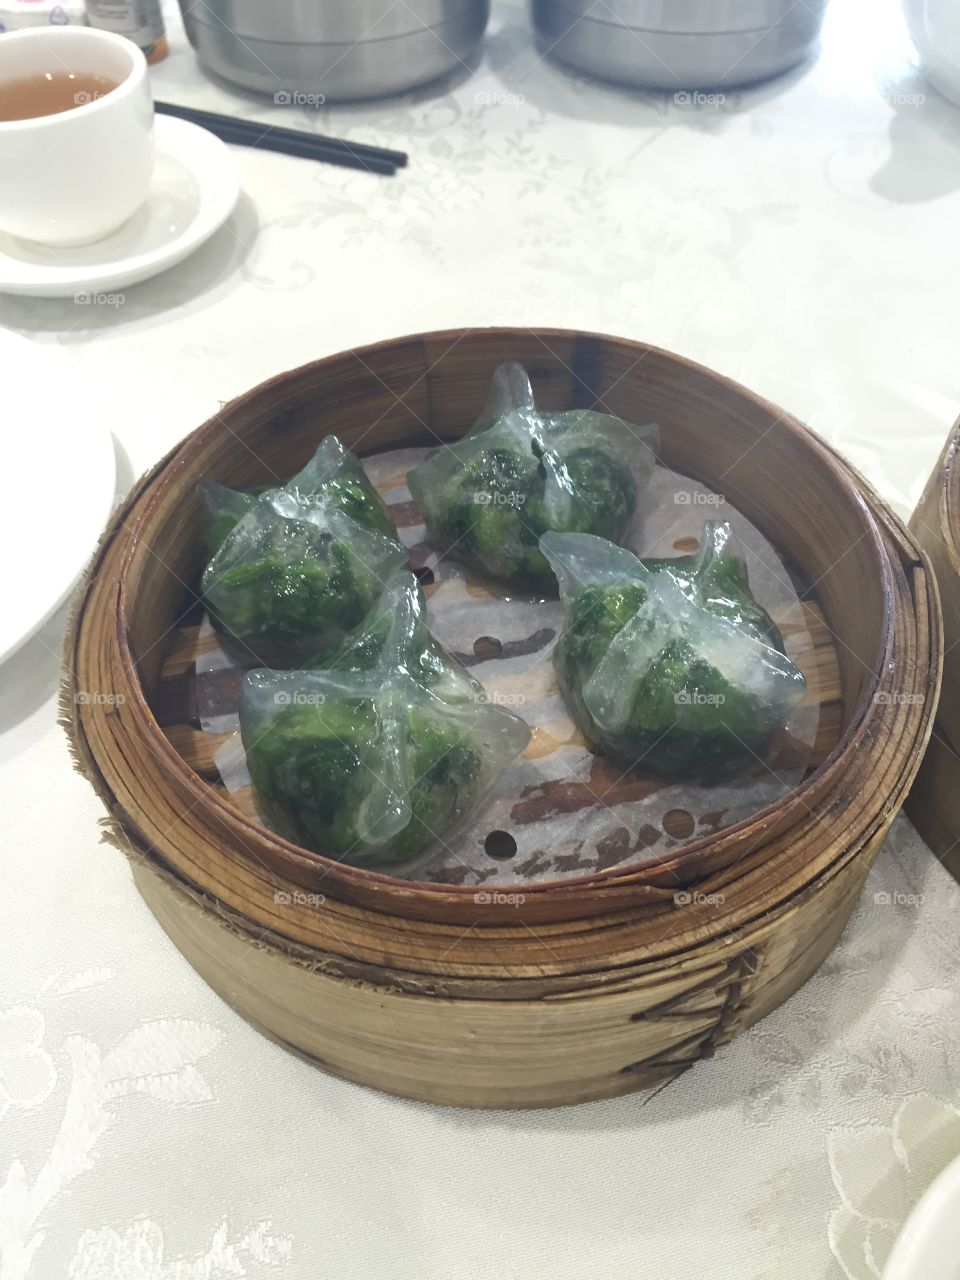 Chinese dim sum - vegetable dumplings